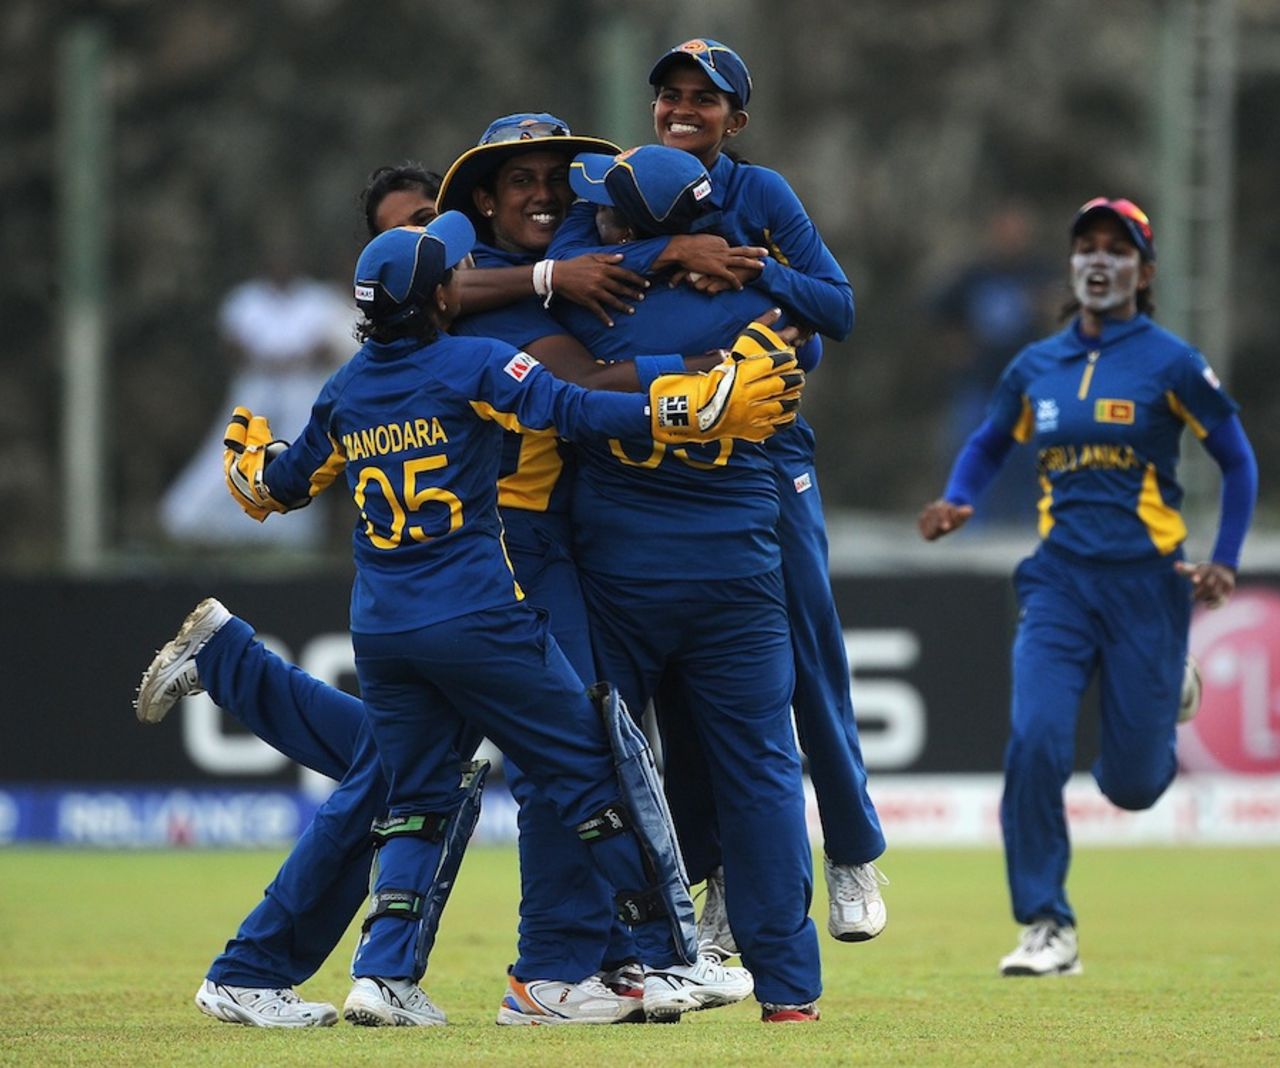 Sri Lanka Women celebrate a wicket, Sri Lanka v West Indies, Women's World T20, Group B, Galle, September 28, 2012